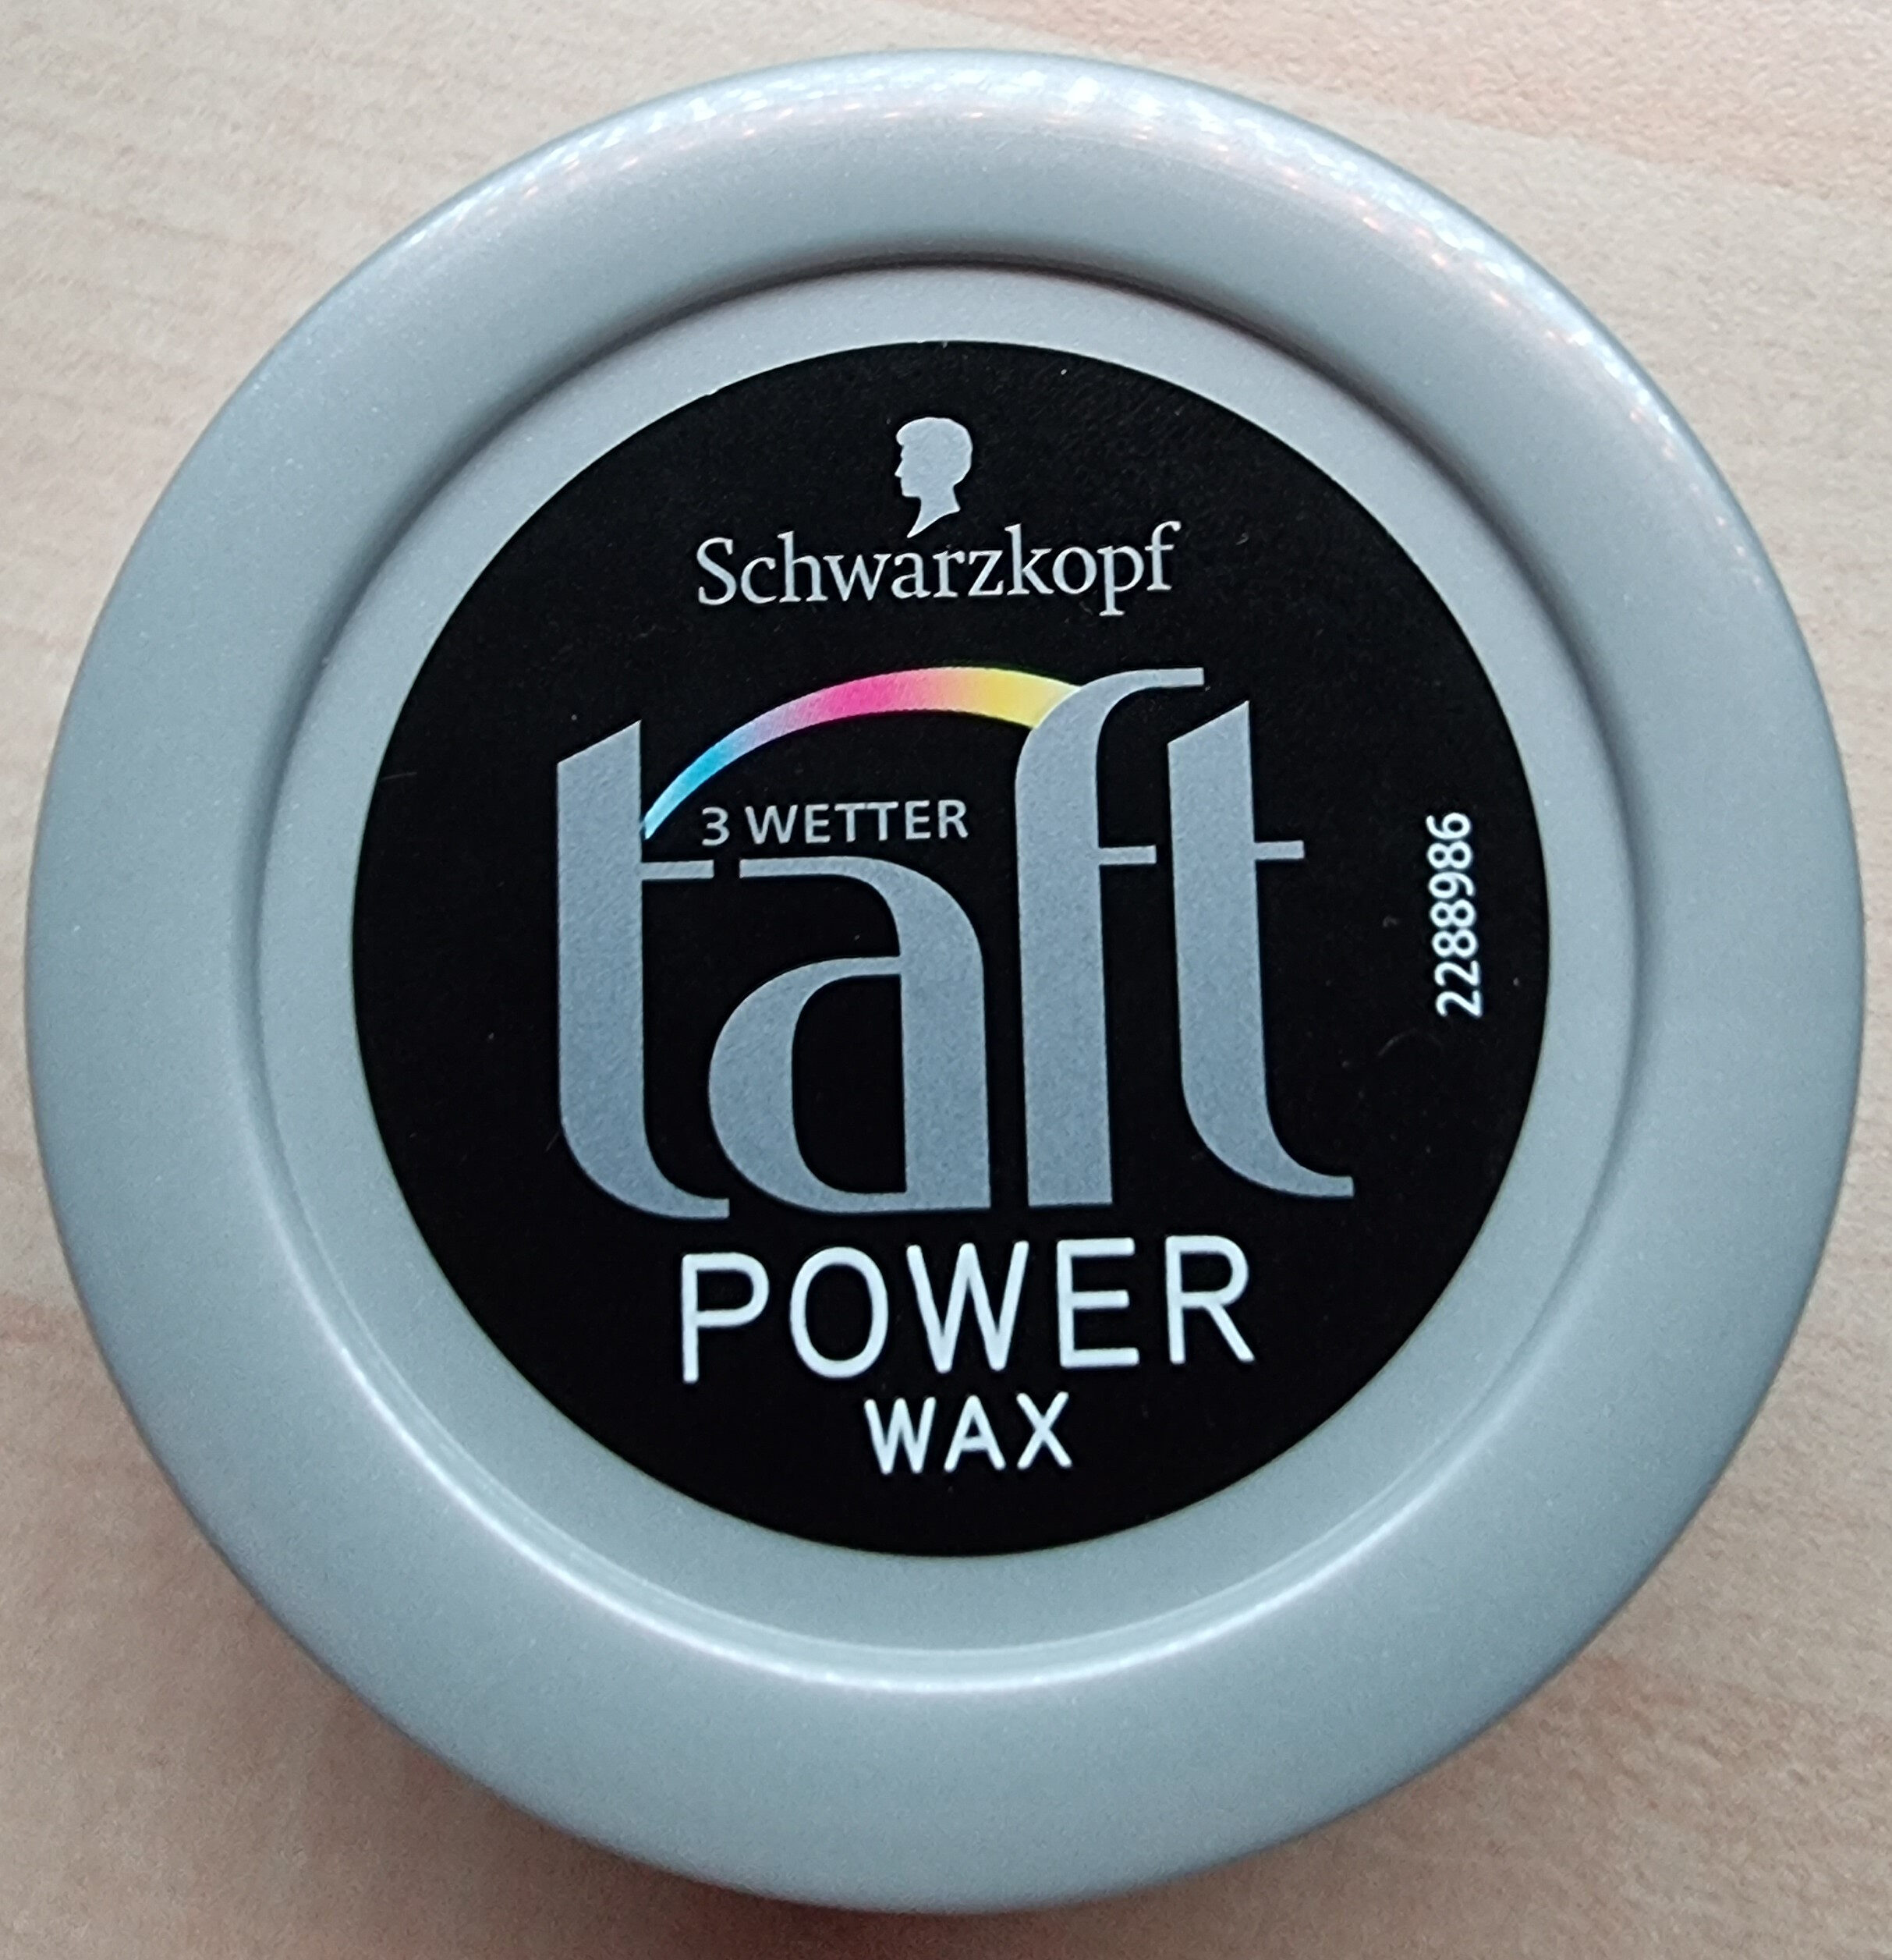 3 Wetter taft Power Wax - Produkt - de